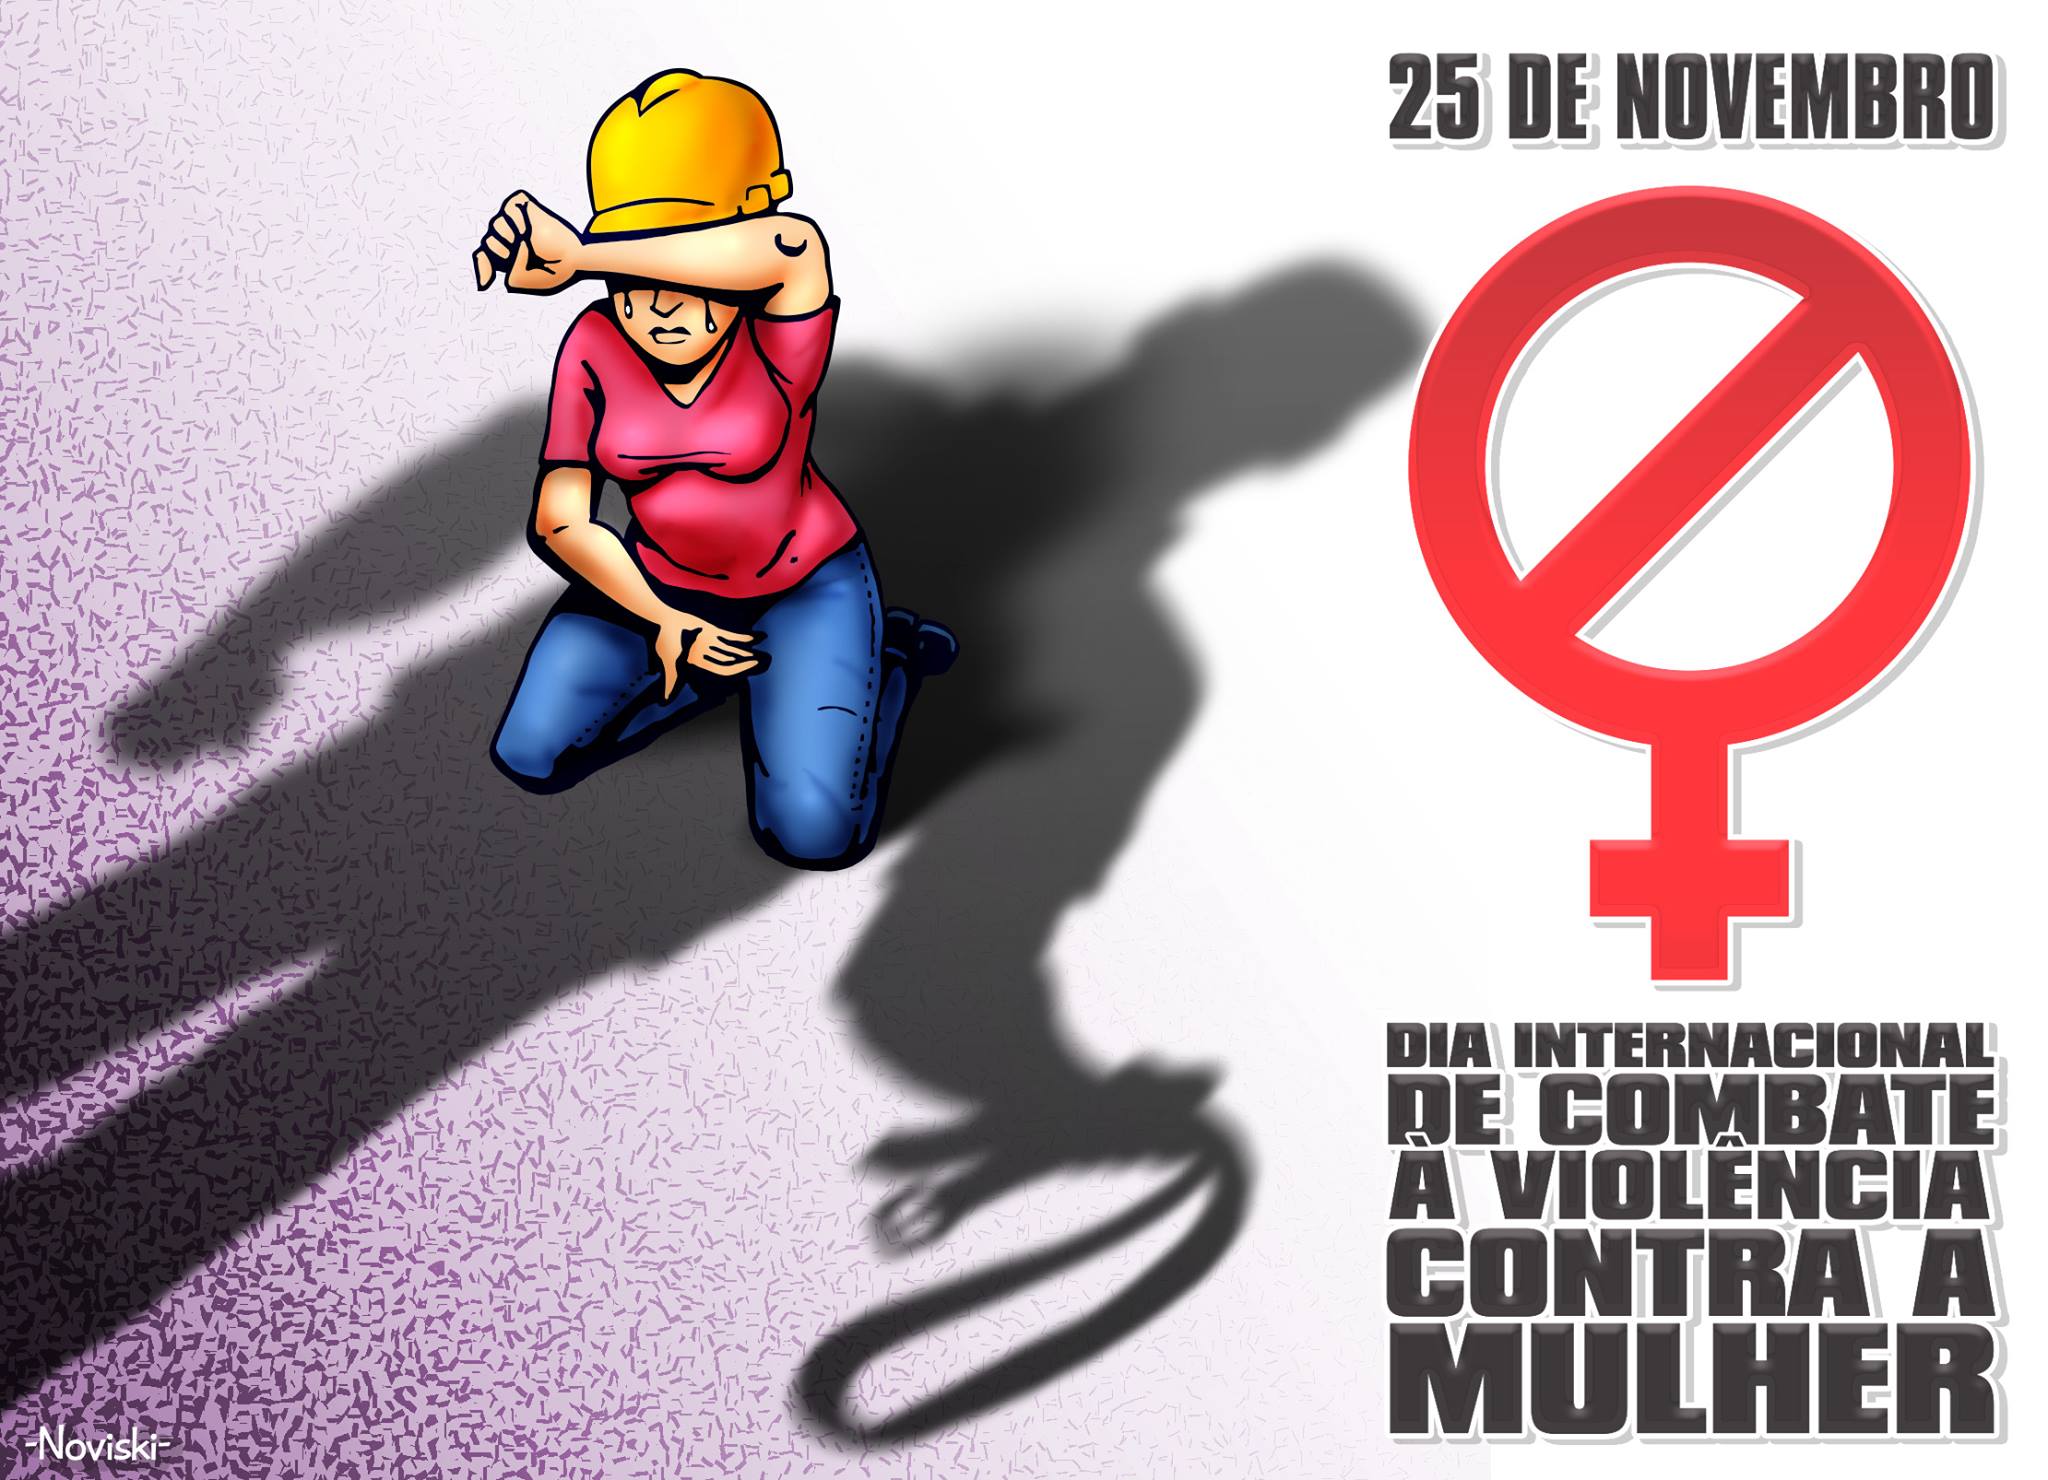 Violência contra a mulher envergonha sociedade, diz presidente Dilma